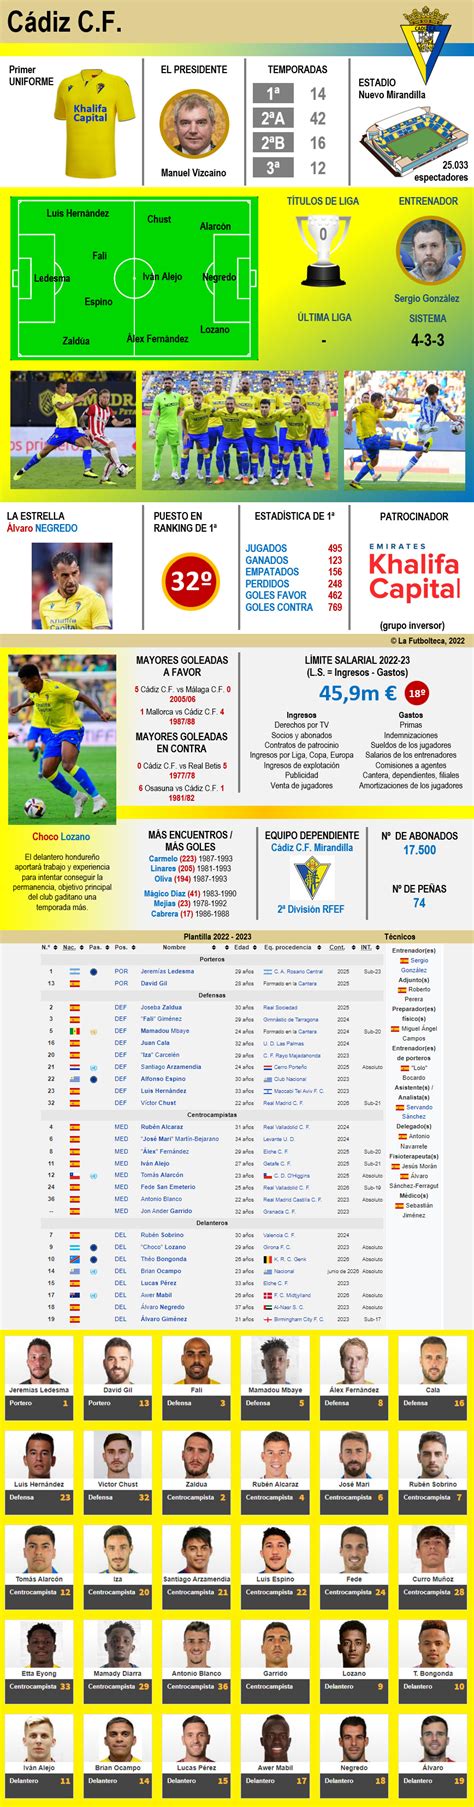 Classificações de Cádiz Club de Fútbol x Barcelona: Guia Completo para F